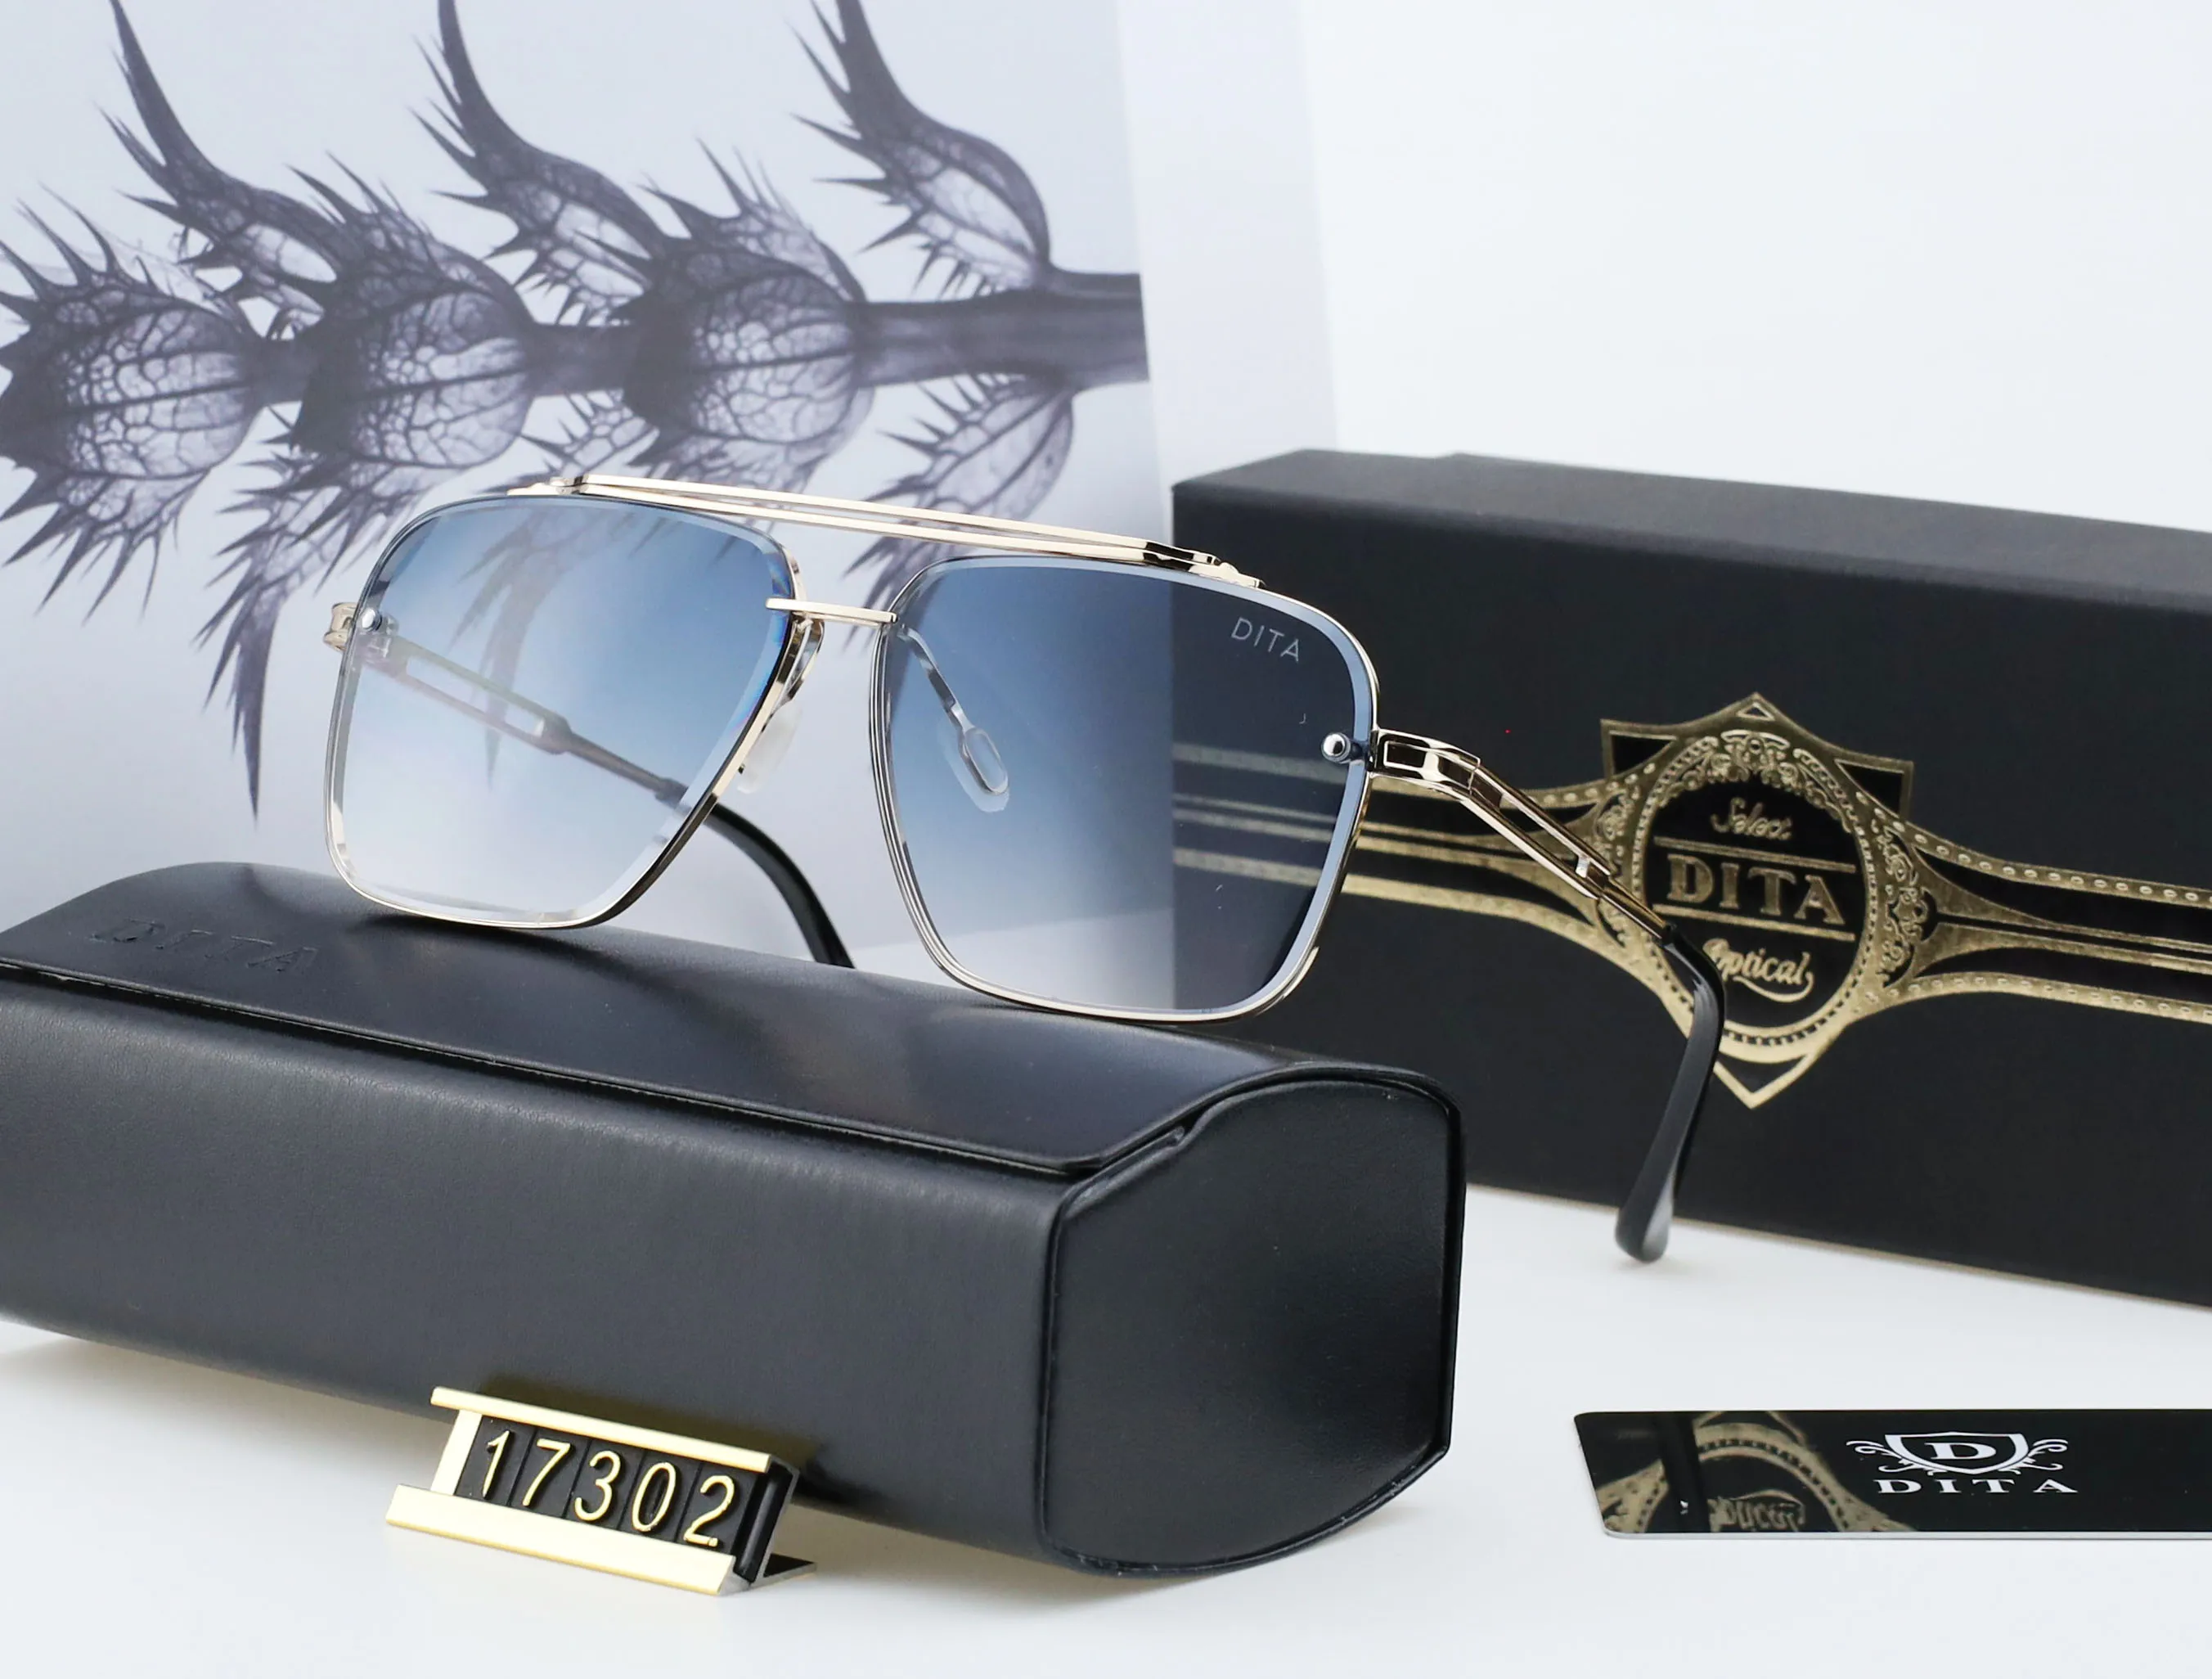 DITA 17302 lunettes de soleil design femmes lunettes de soleil lentille polarisée UV400 cadre carré pour men287i